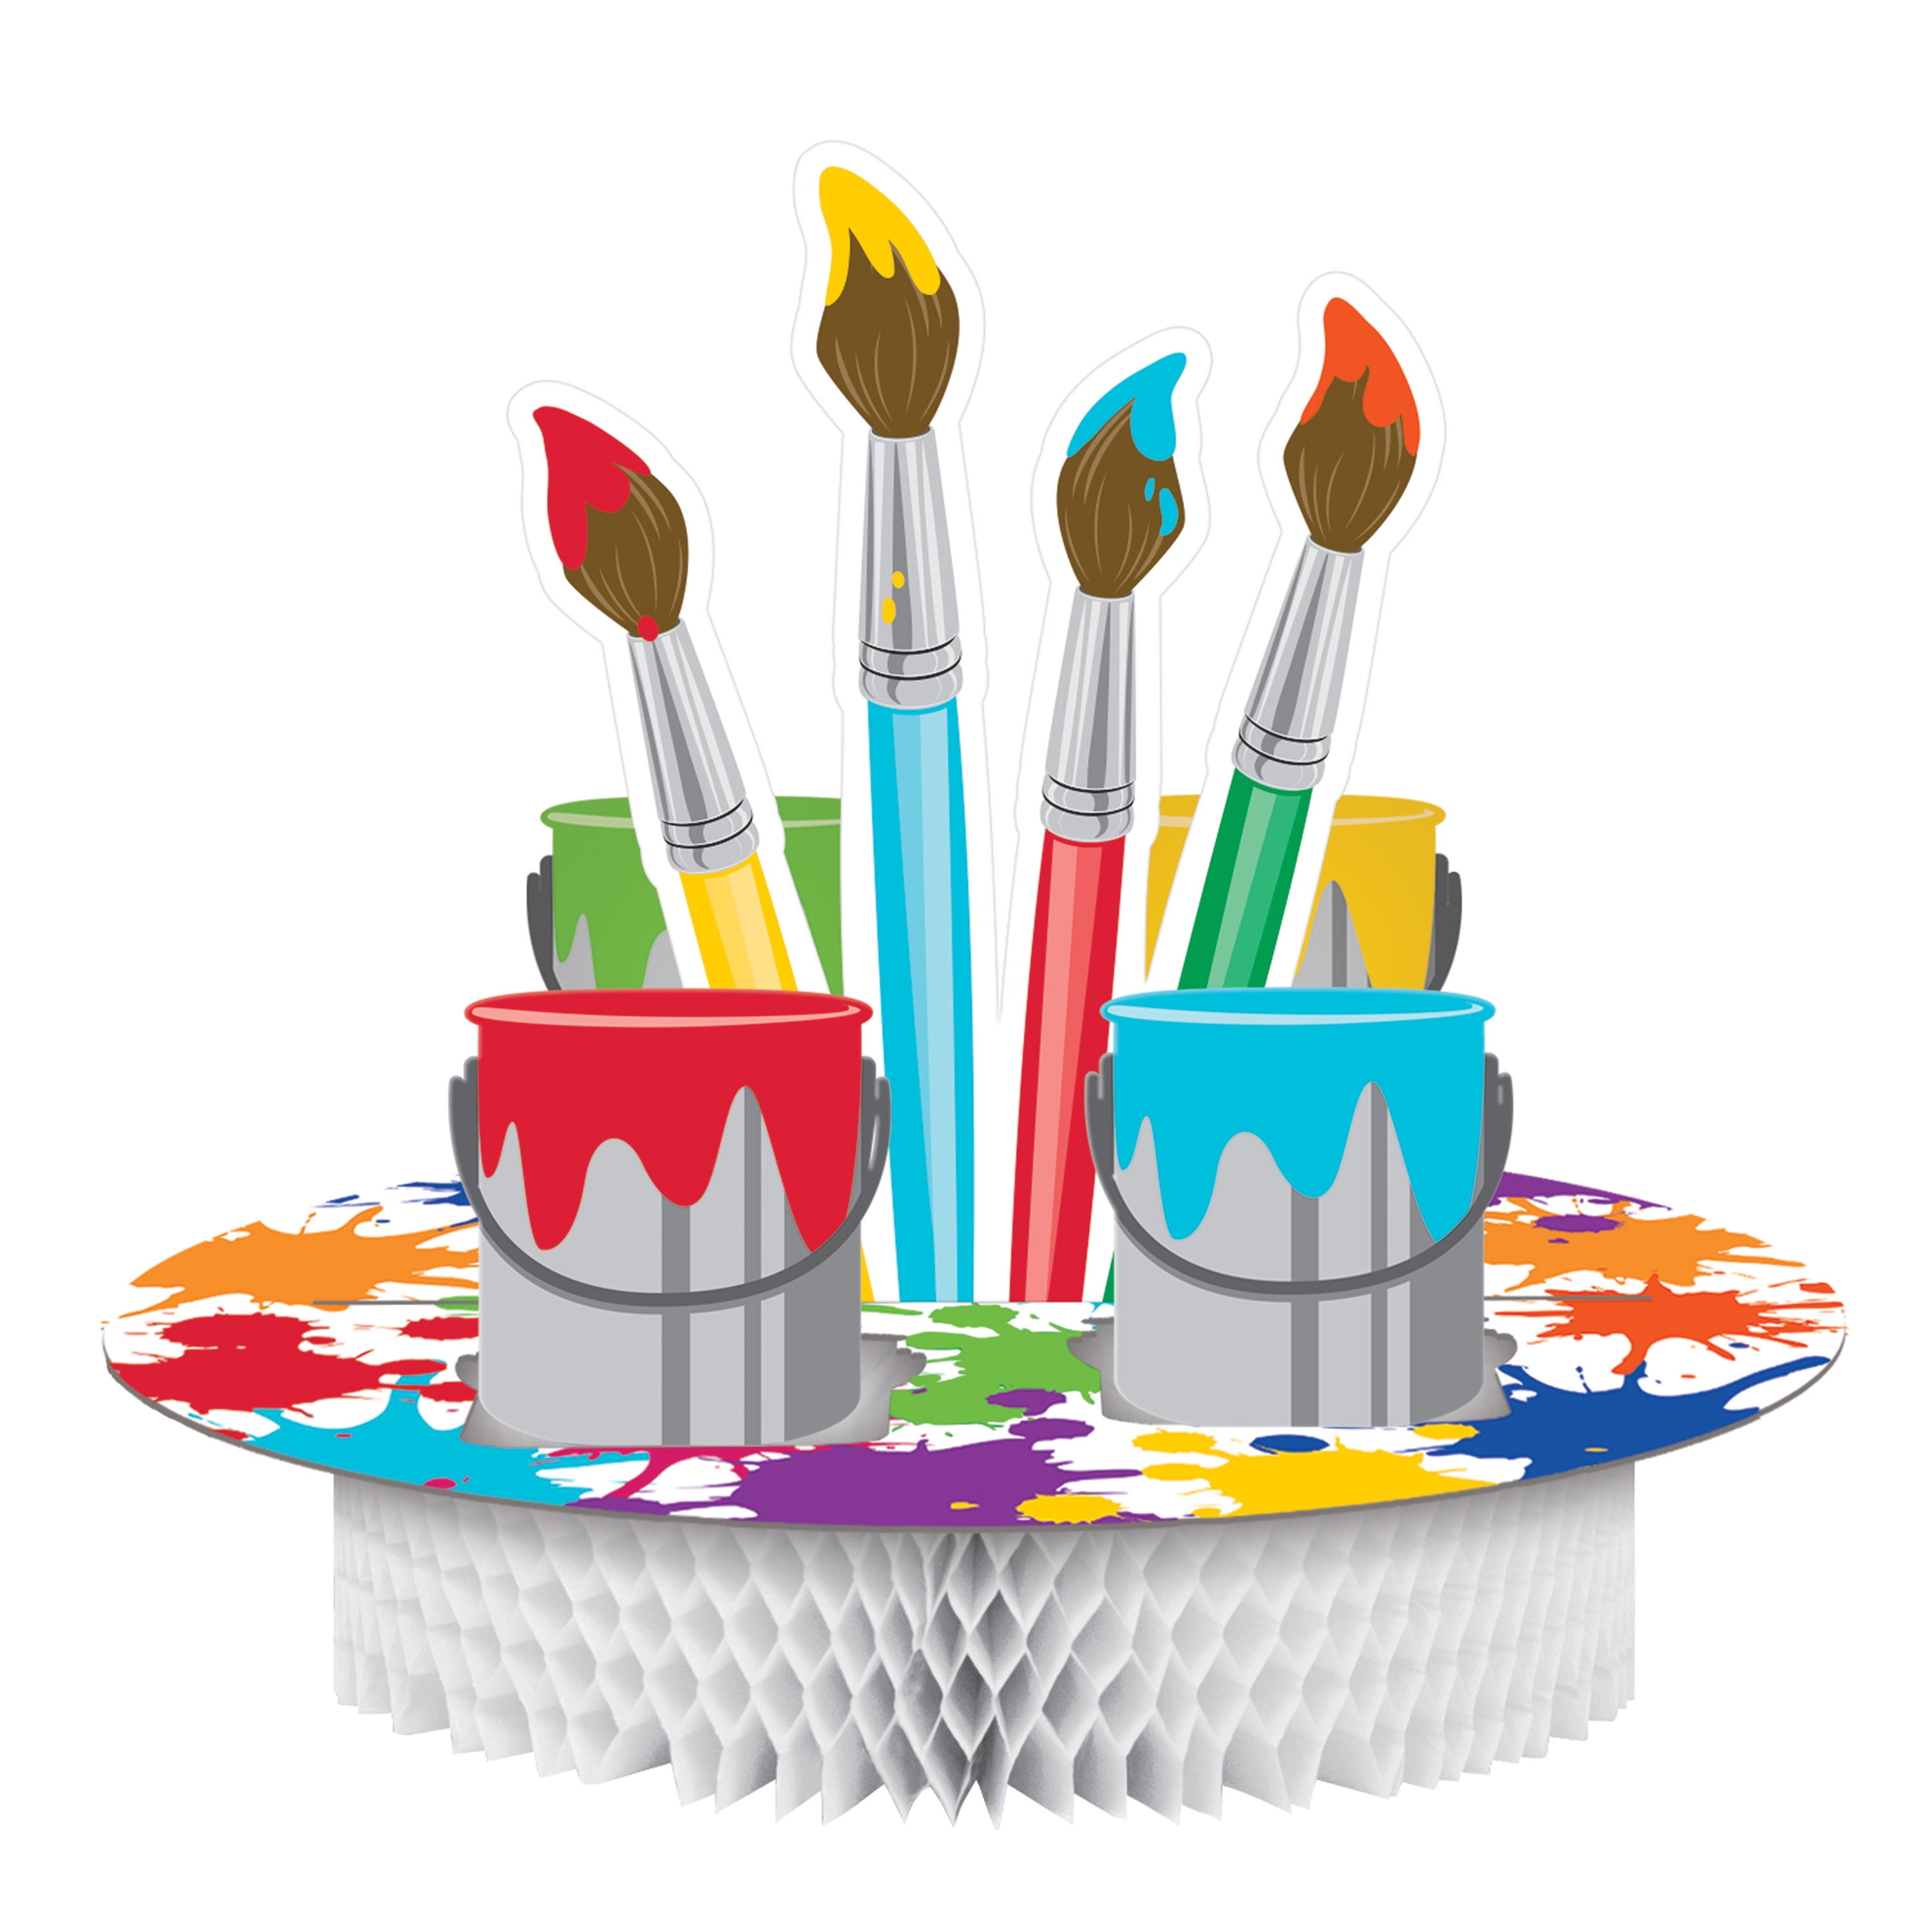 Brush Cut Out Paint Brush Confetti Paint Decorations Paint Theme Art Party Supplies Art Decorations